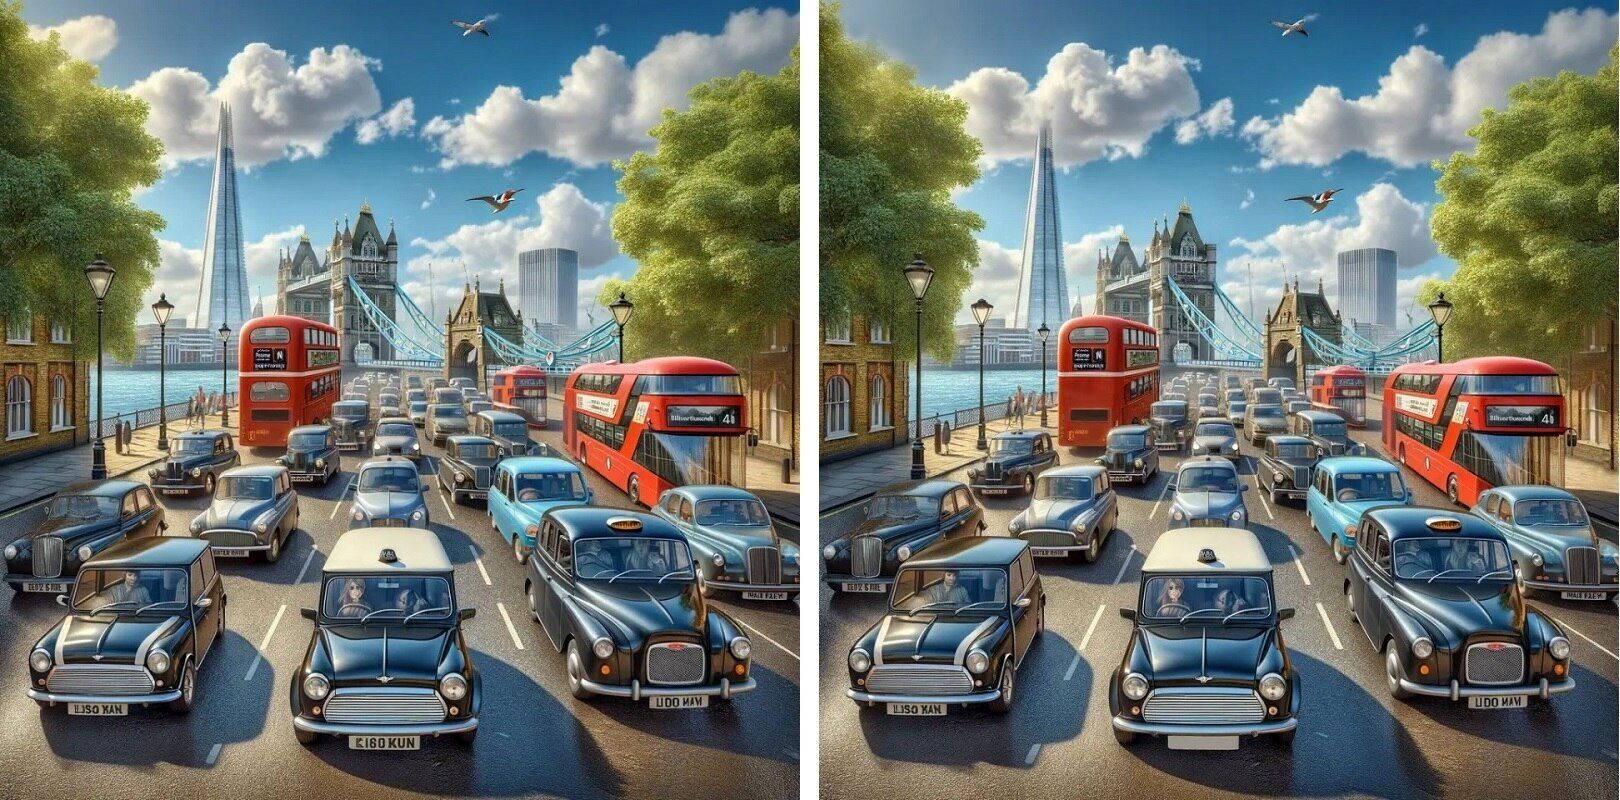 ترافیک در خیابان لندن و 10 تفاوت بین دو تصویر